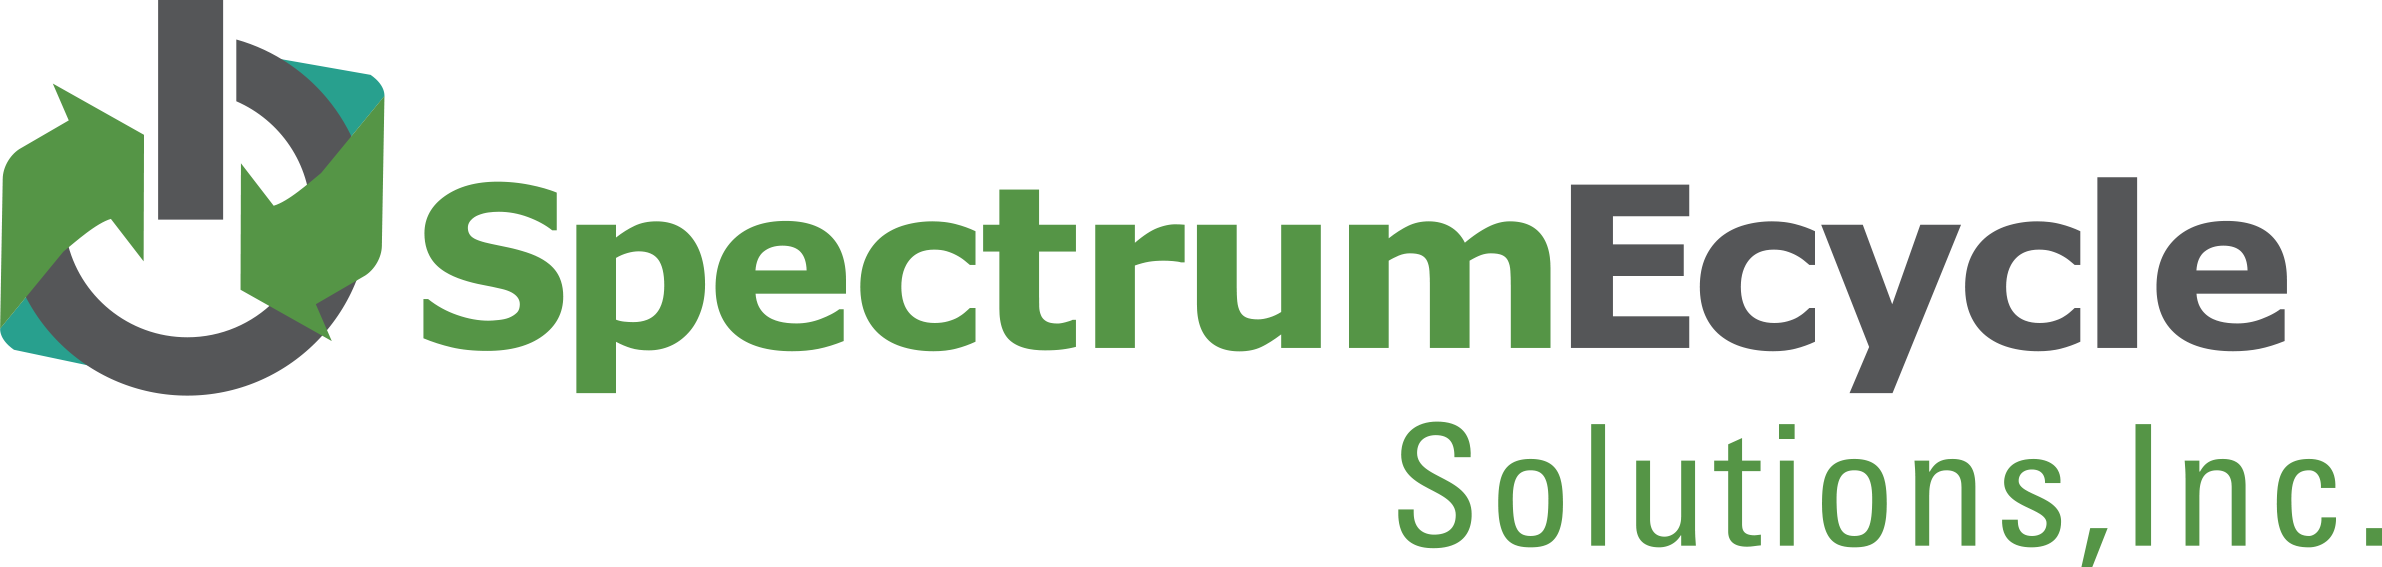 SpectrumEcycle logo